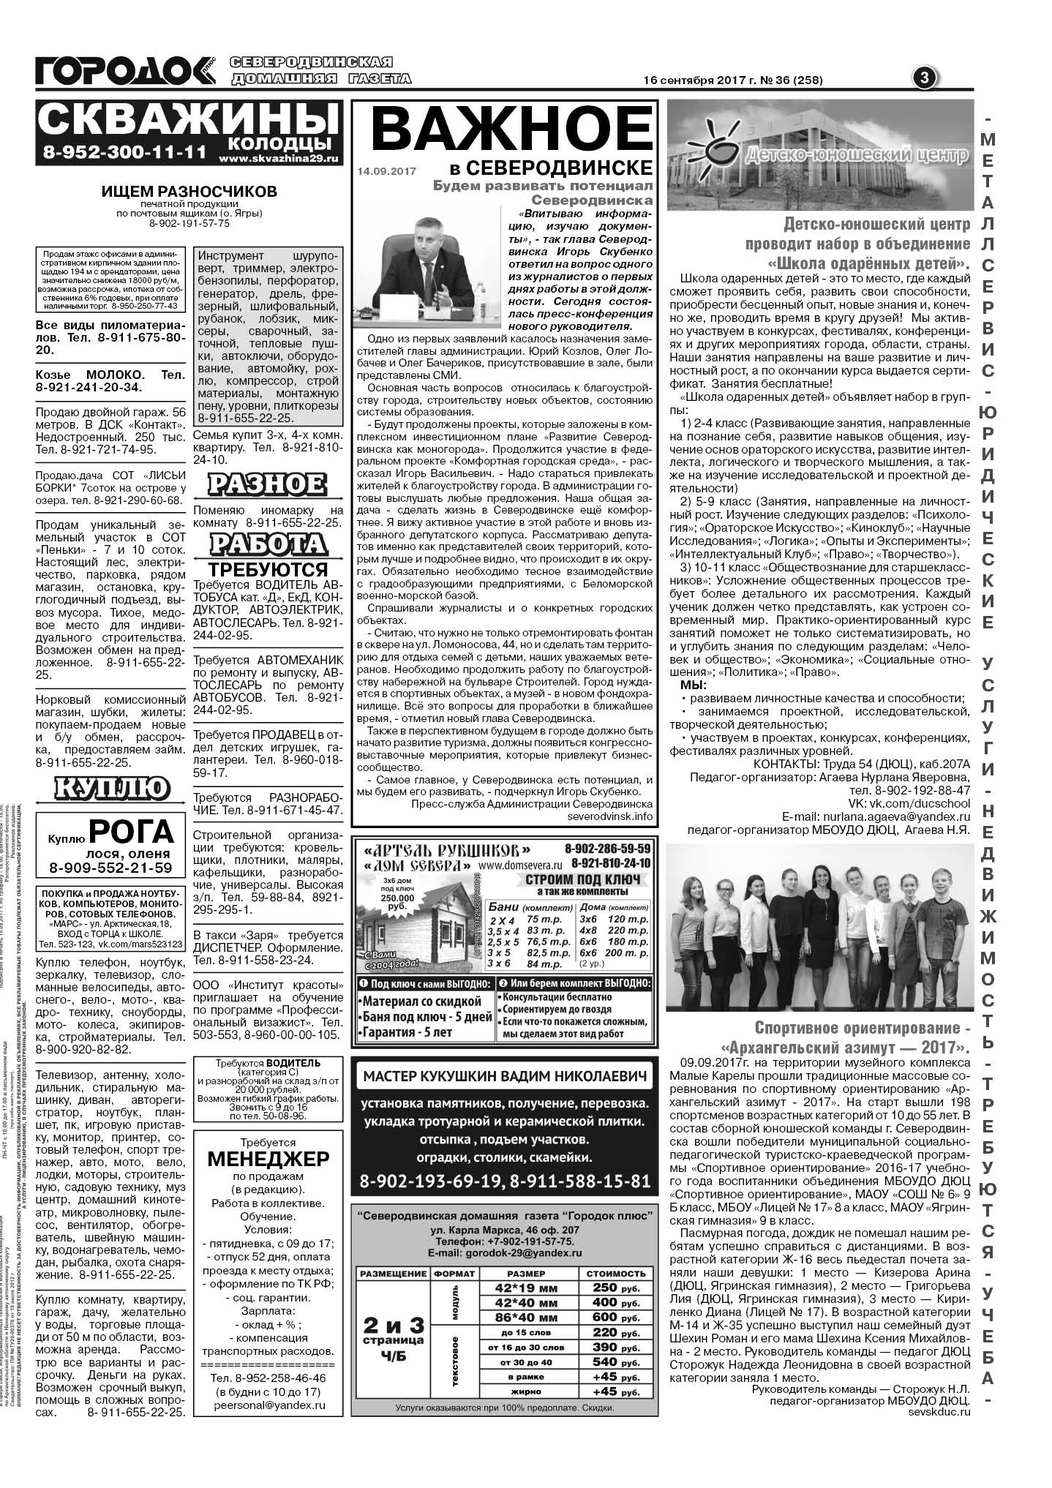 Городок плюс, выпуск номер 36 от 16 сентября 2017 года, страница 3.